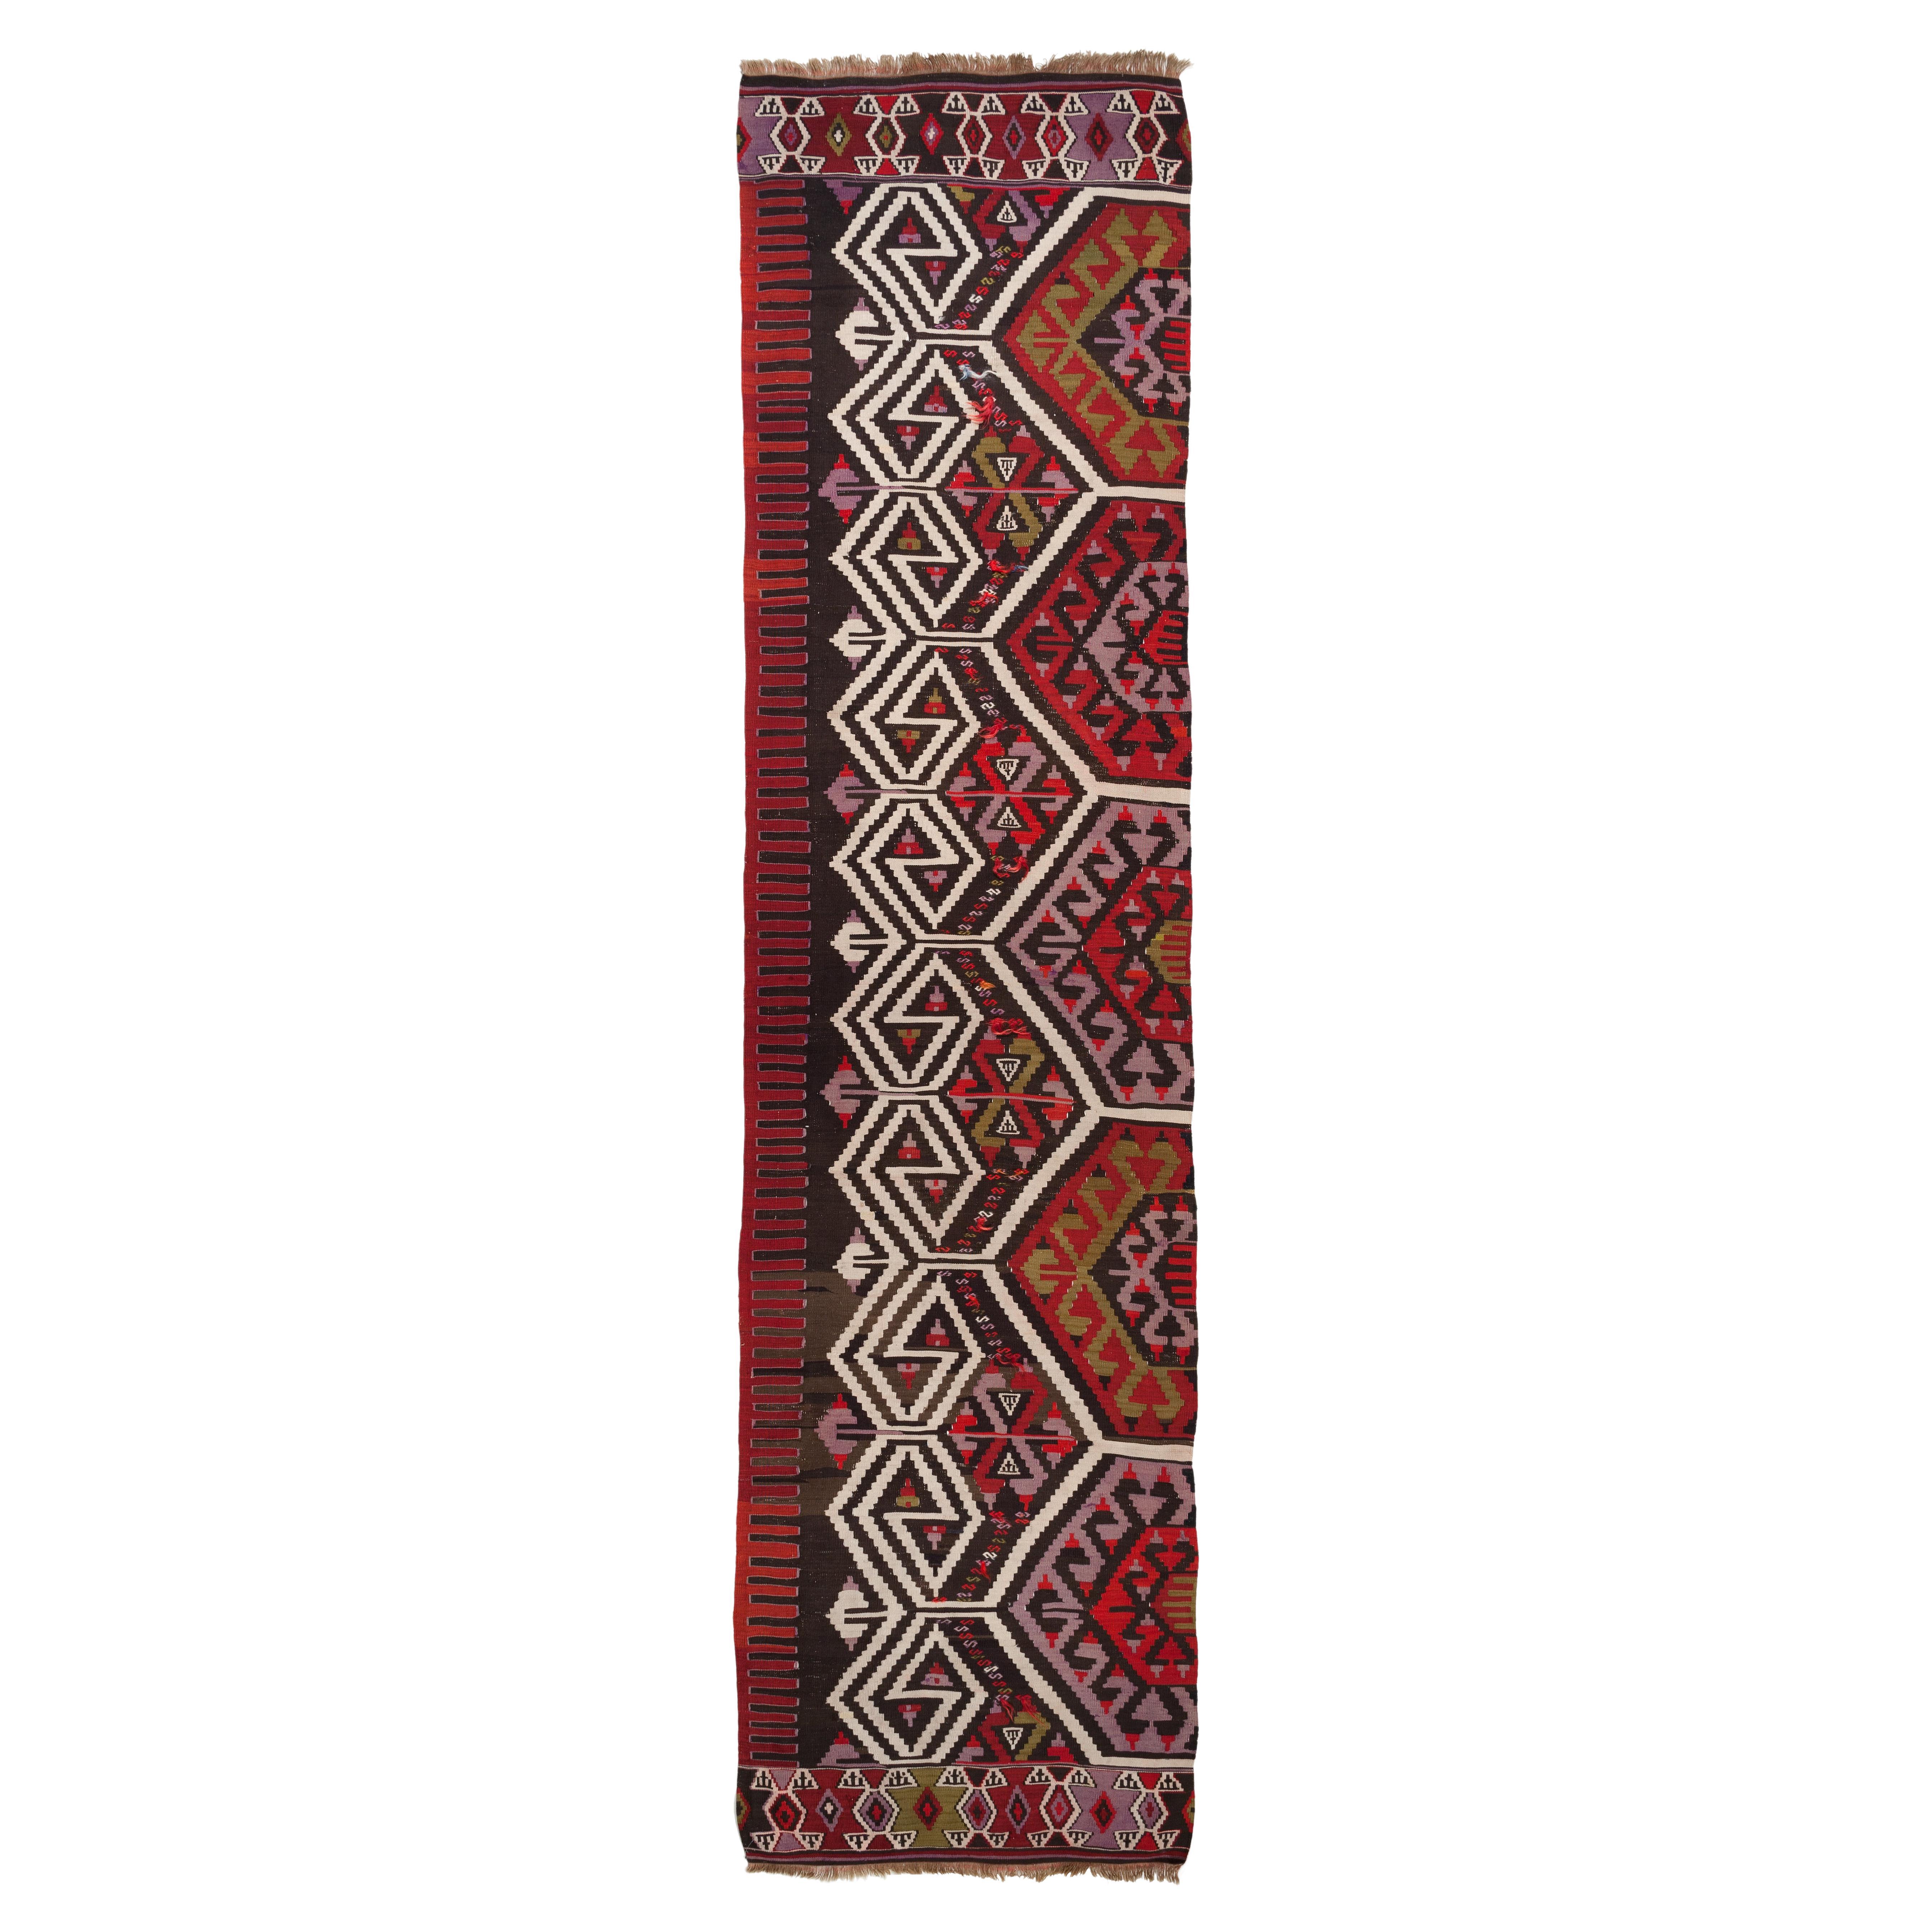 Collection de tapis Ararat, tapis Kilim antique d'Anatolie centrale, tapis turc